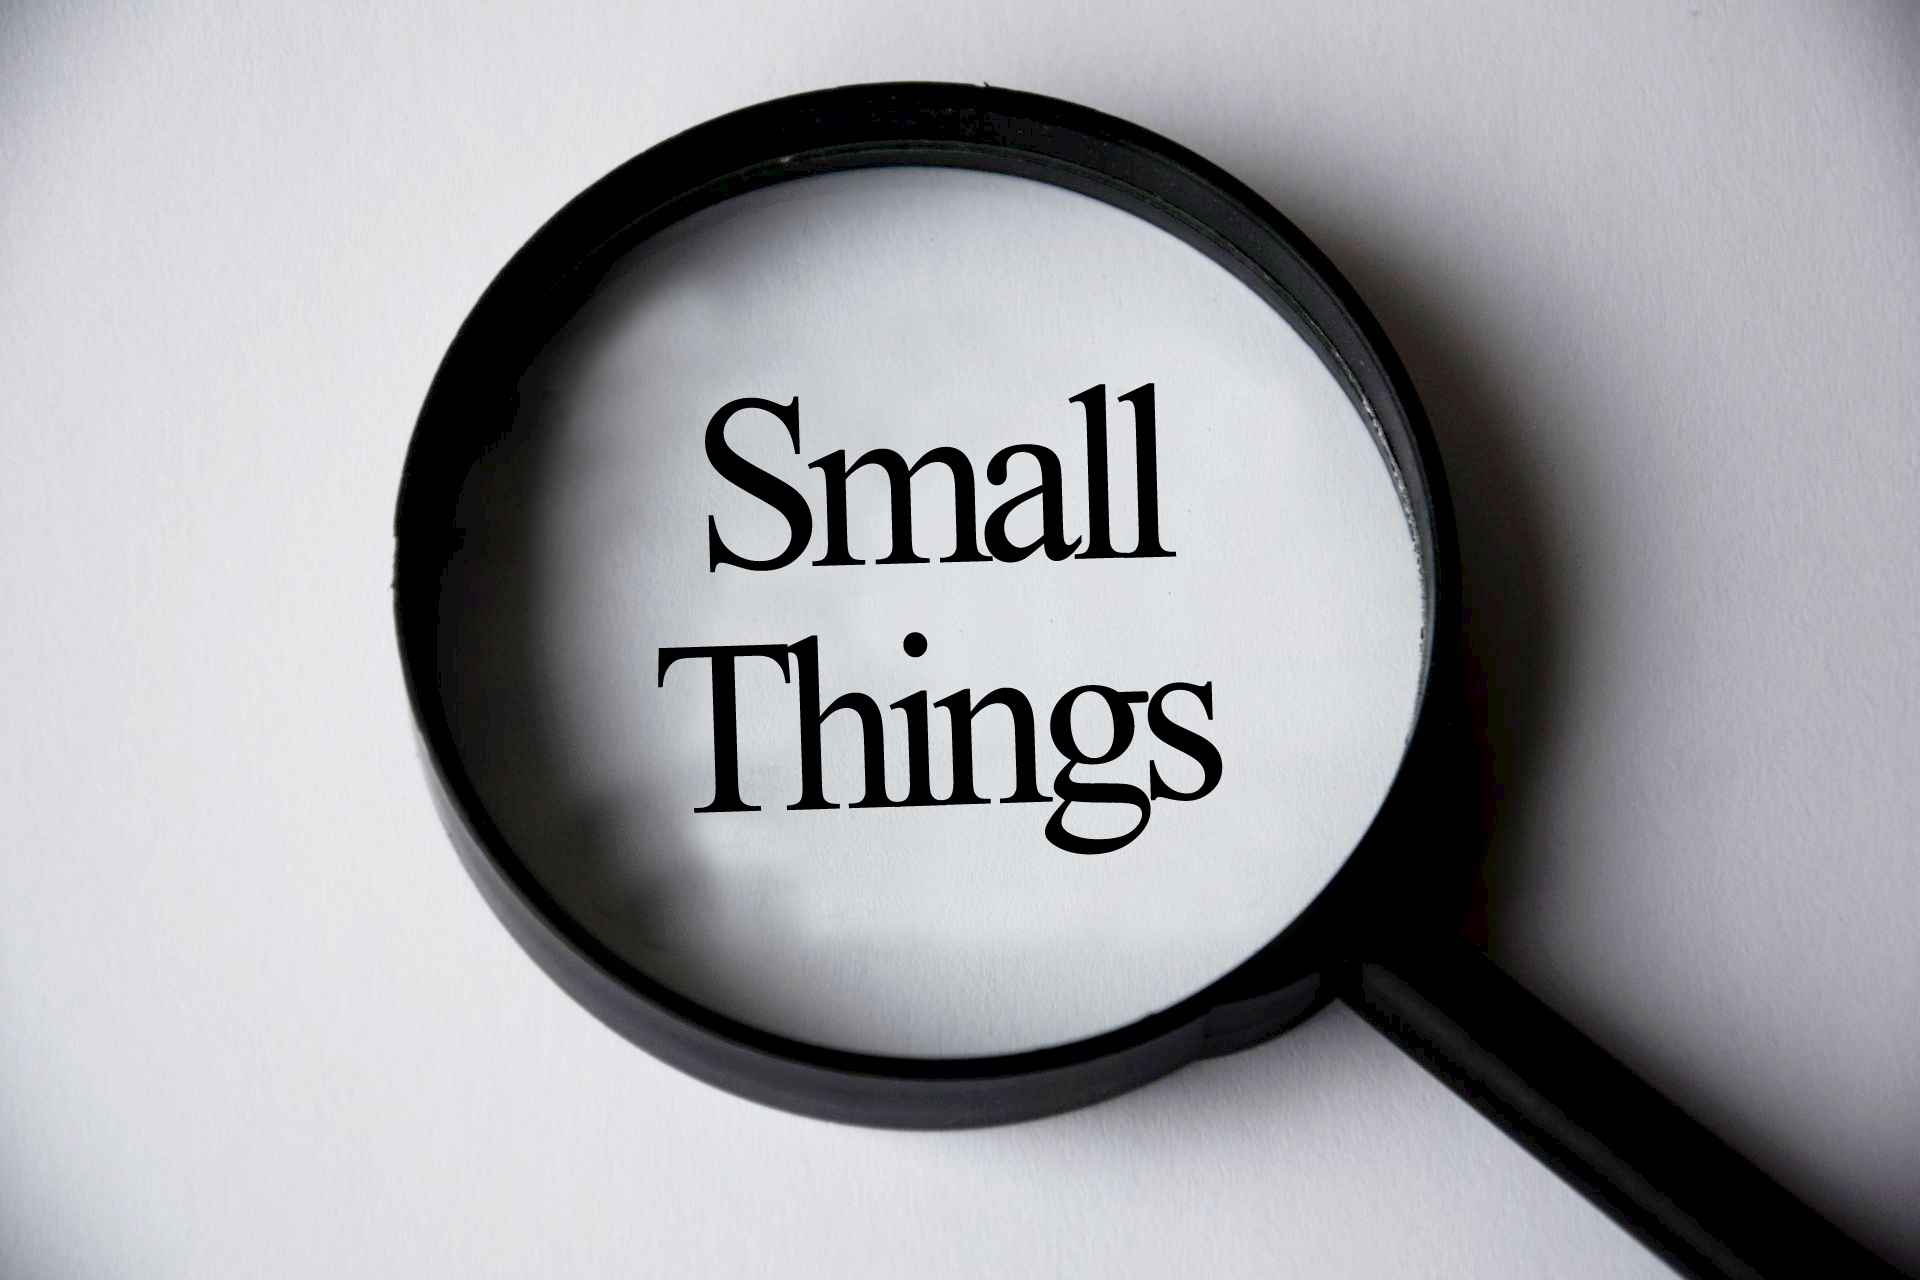 This small things. Small things. All the small things.